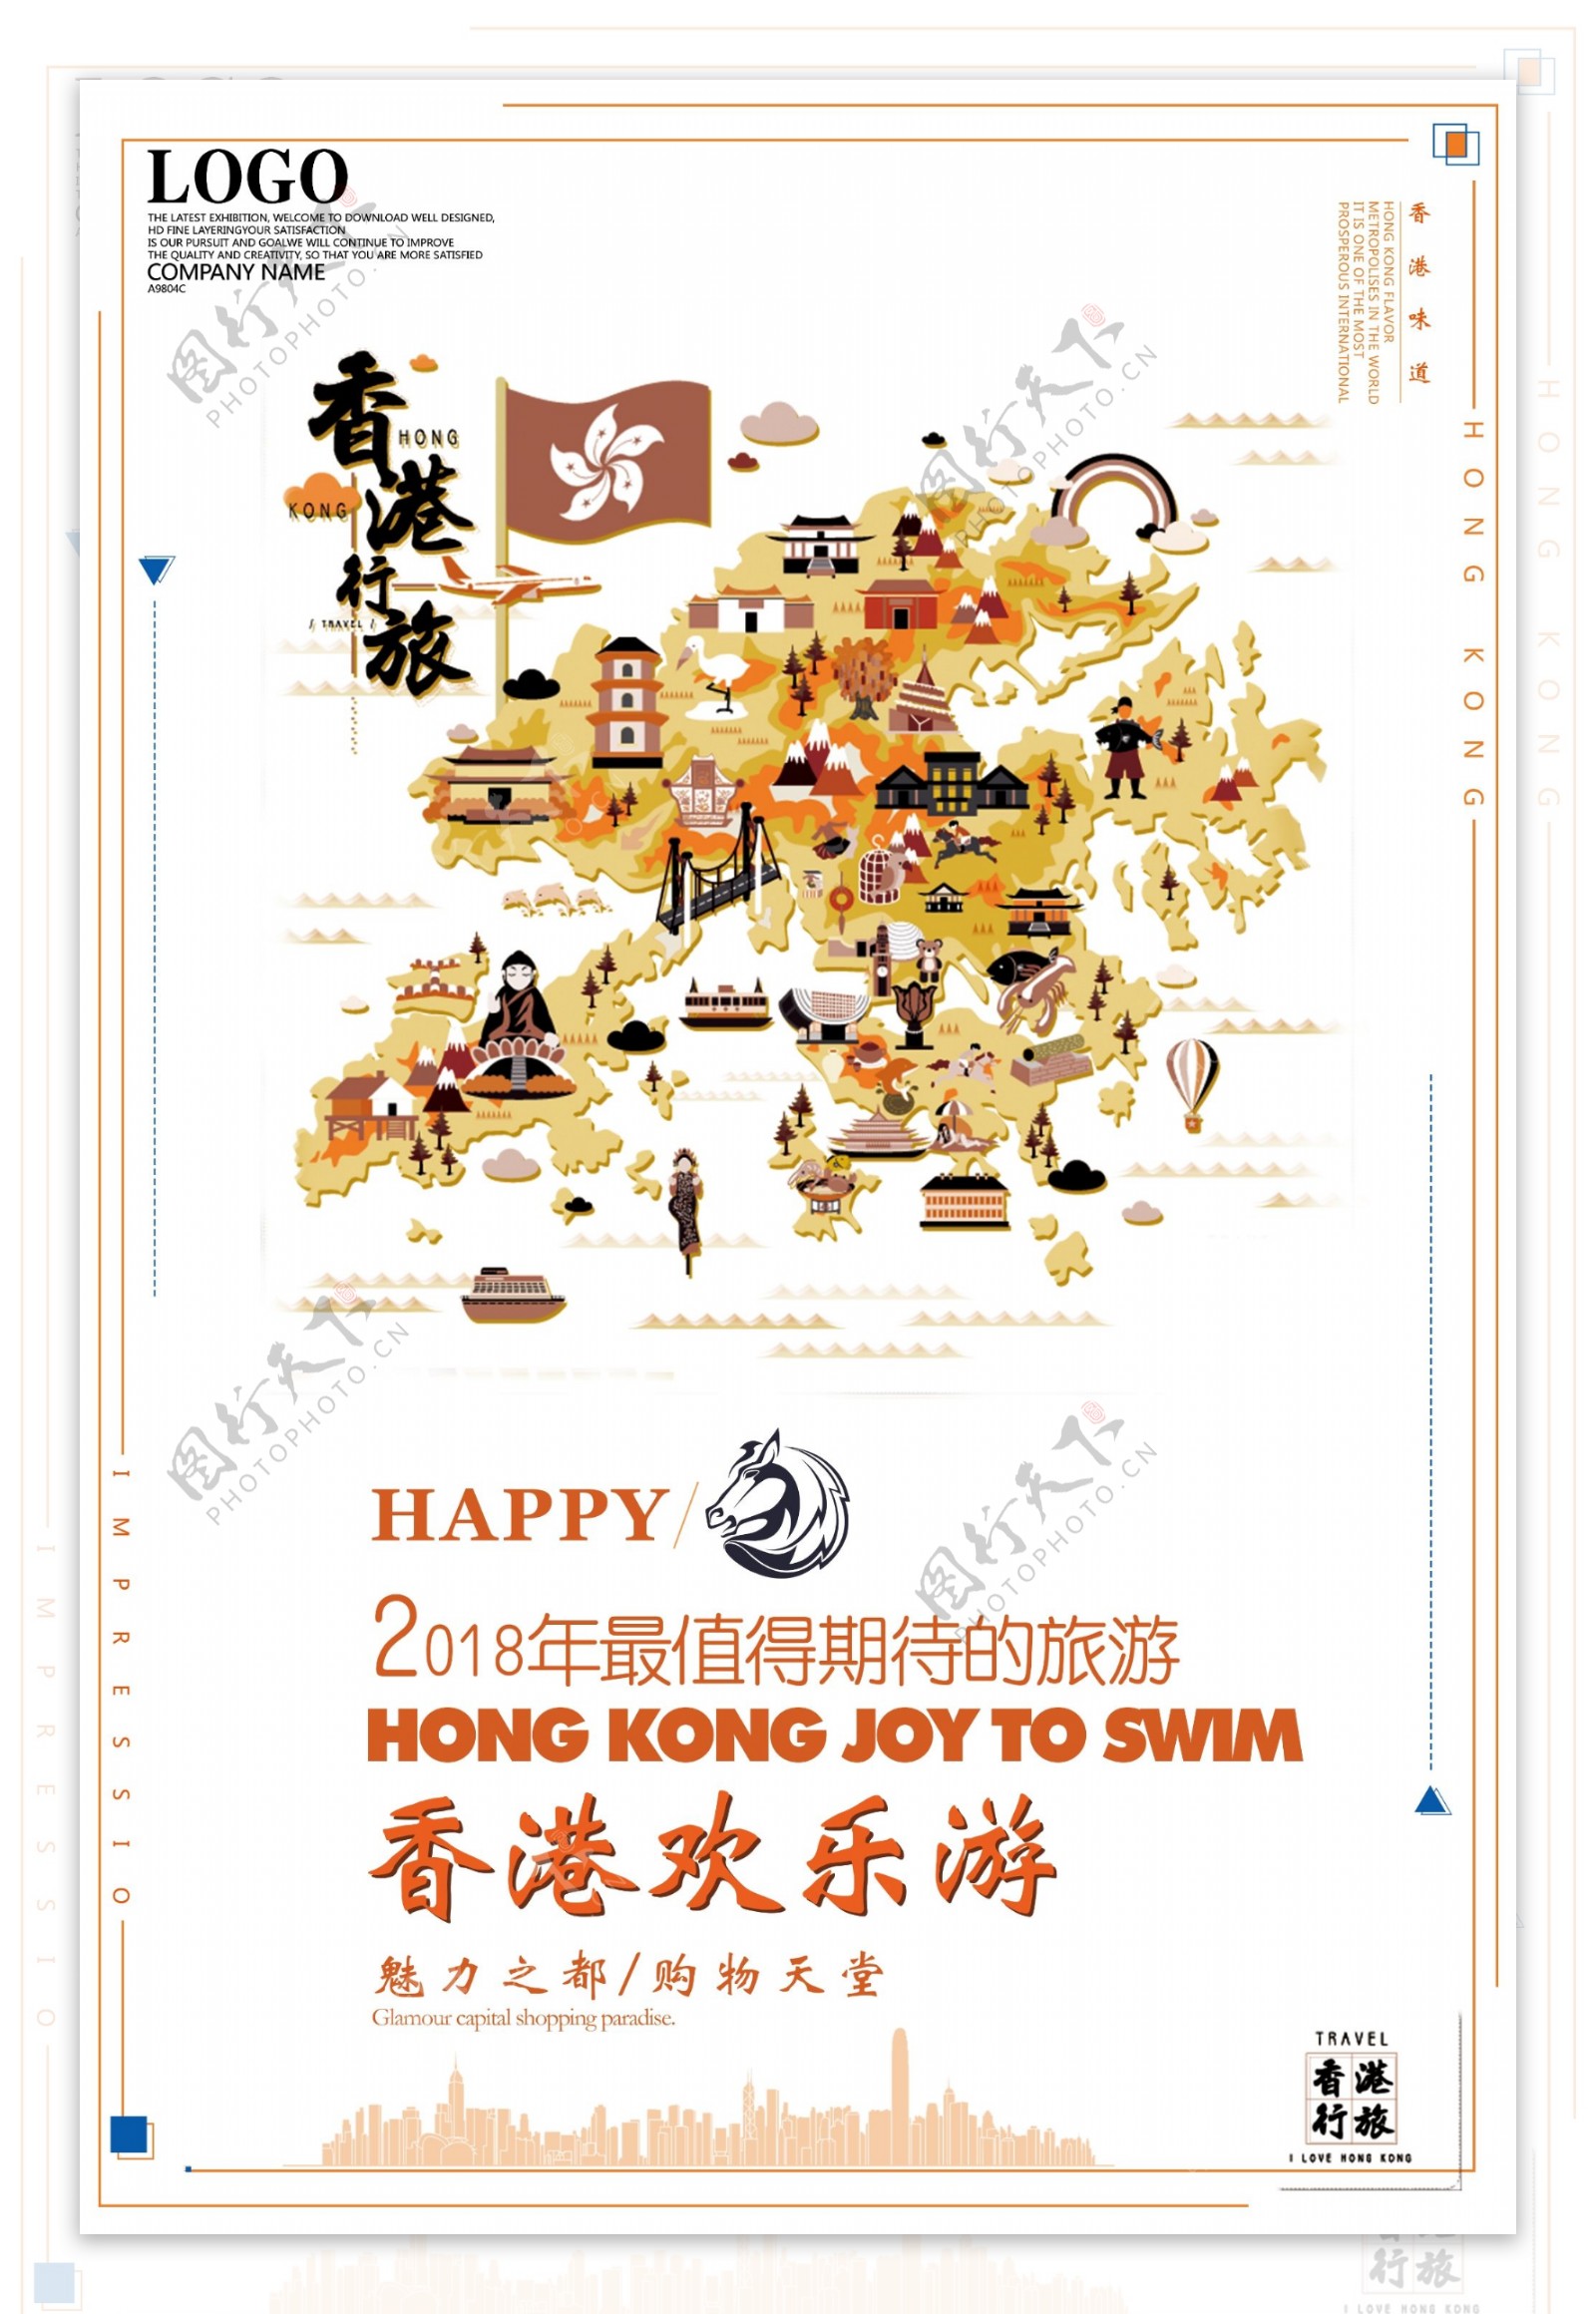 简约大气精美香港欢乐游创意海报设计